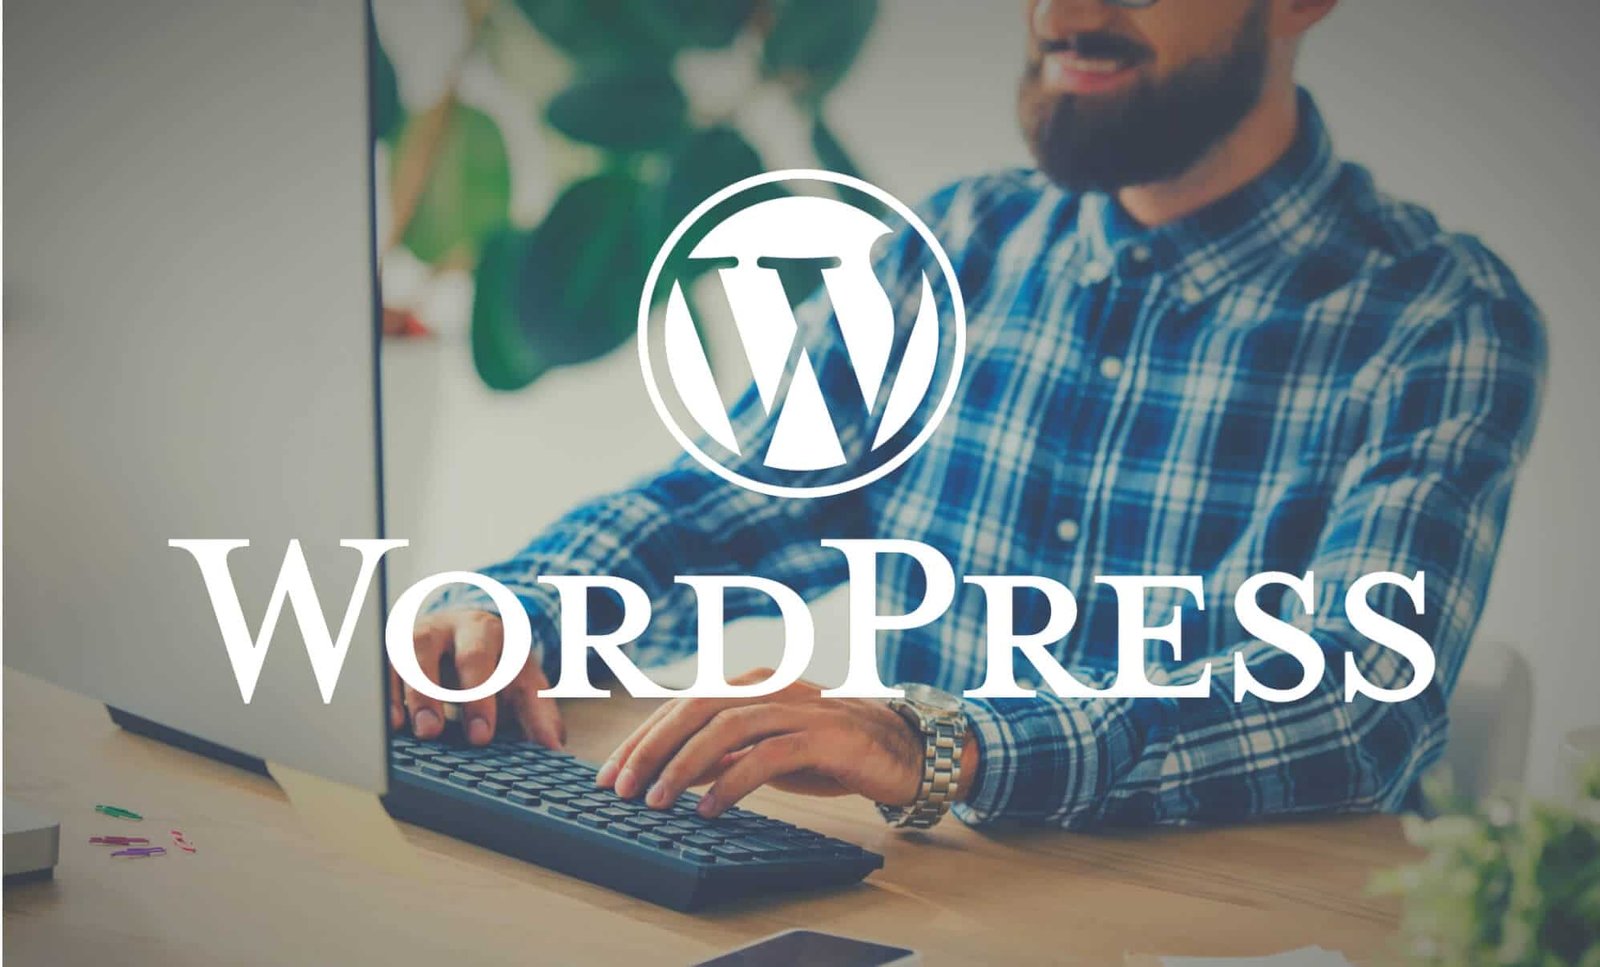 Ein Mann in einem karierten Hemd arbeitet an einem Laptop mit dem sichtbaren WordPress-Logo auf dem Bildschirm. Dieses Bild steht für die Benutzerfreundlichkeit und Flexibilität von WordPress, der weltweit führenden Plattform für das Webhosting und die Erstellung von Webseiten. Es betont die Bedeutung von WordPress für Entwickler und Content-Manager, die eine leistungsstarke und anpassungsfähige Website-Lösung suchen.